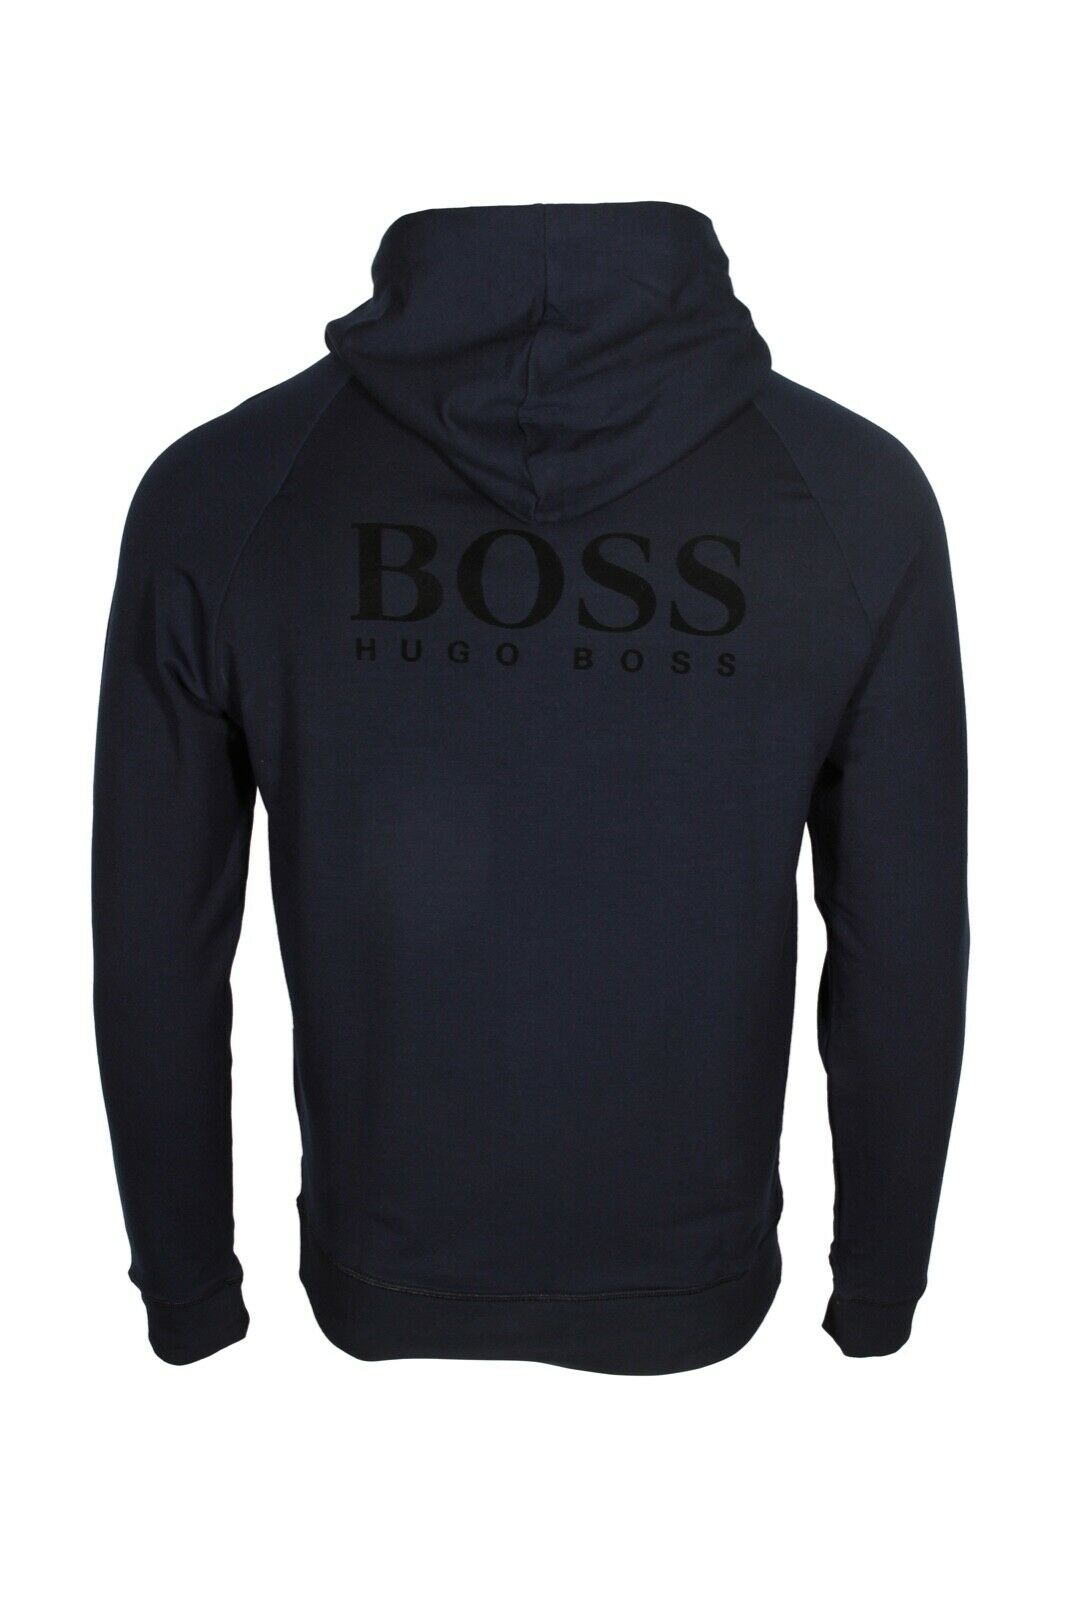 HUGO BOSS Men’s Regular Fit Logo Hooded Sweatshirt in Navy Blue 50460351 403